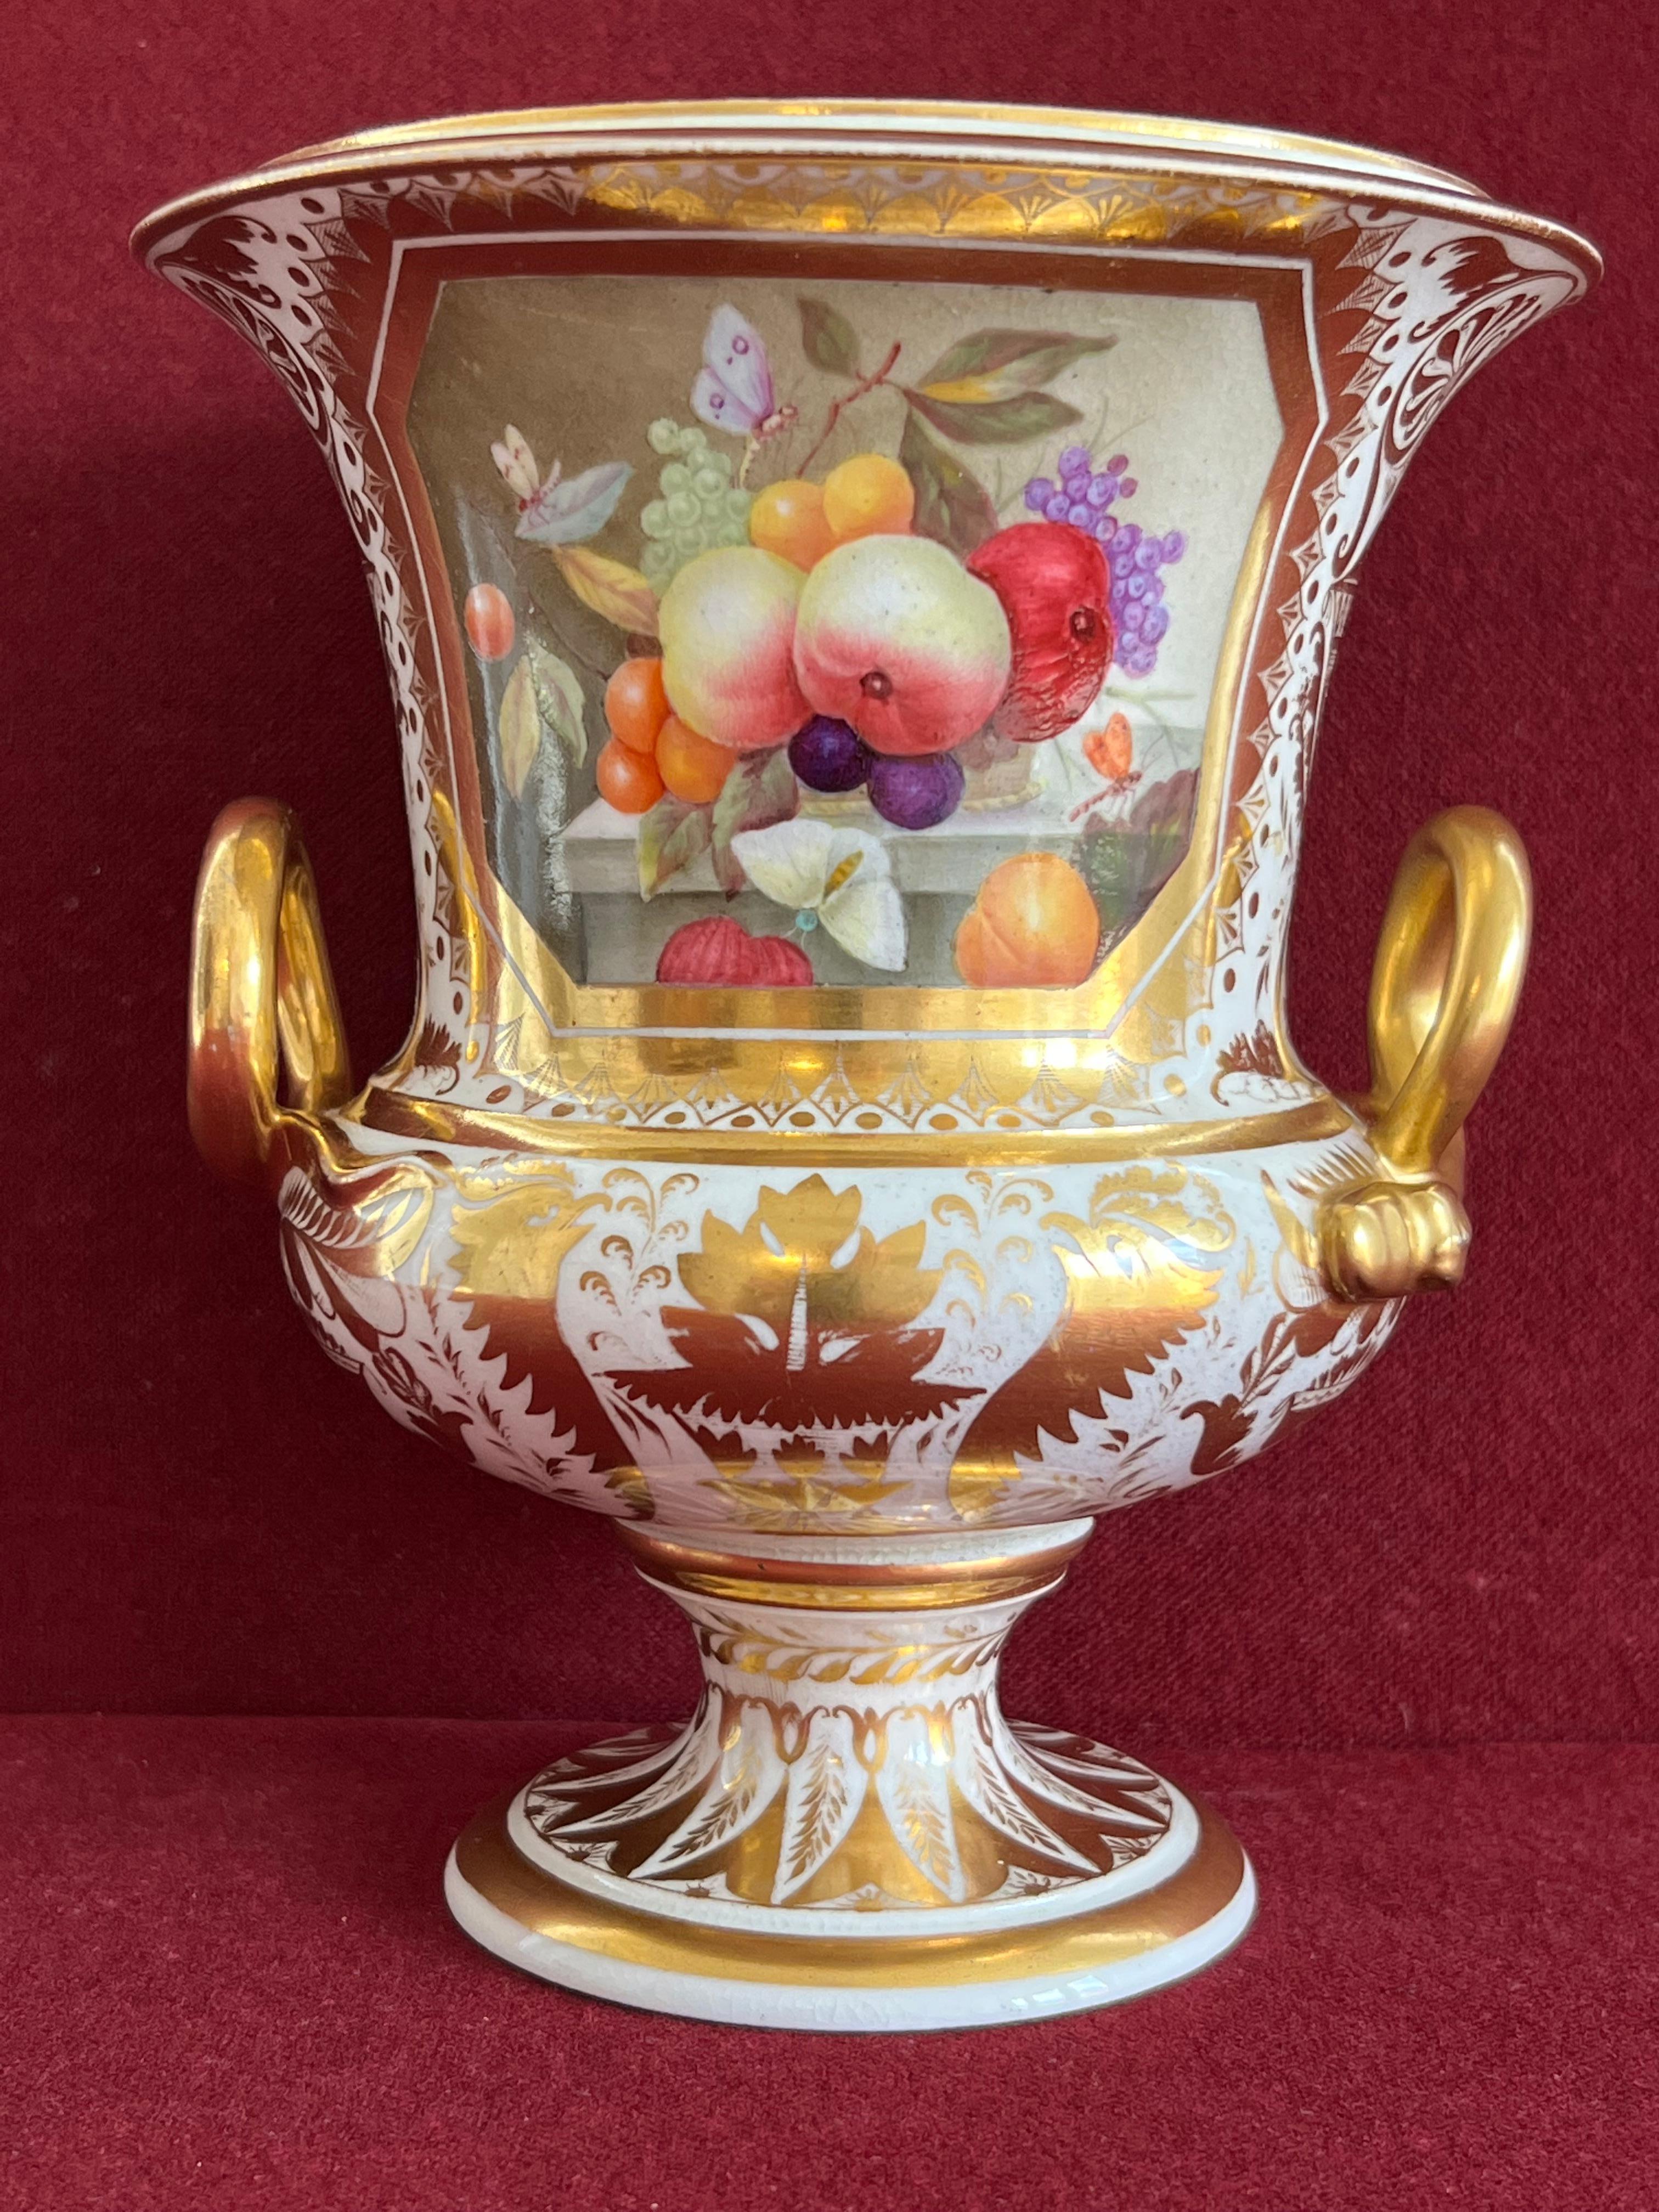 Très beau vase en forme de campane en porcelaine de Derby, vers 1815. Magnifiquement peint avec deux panneaux de fruits à la manière de Thomas Steele. Cet artiste était l'un des artistes les plus talentueux et les plus importants de Derby. Deux